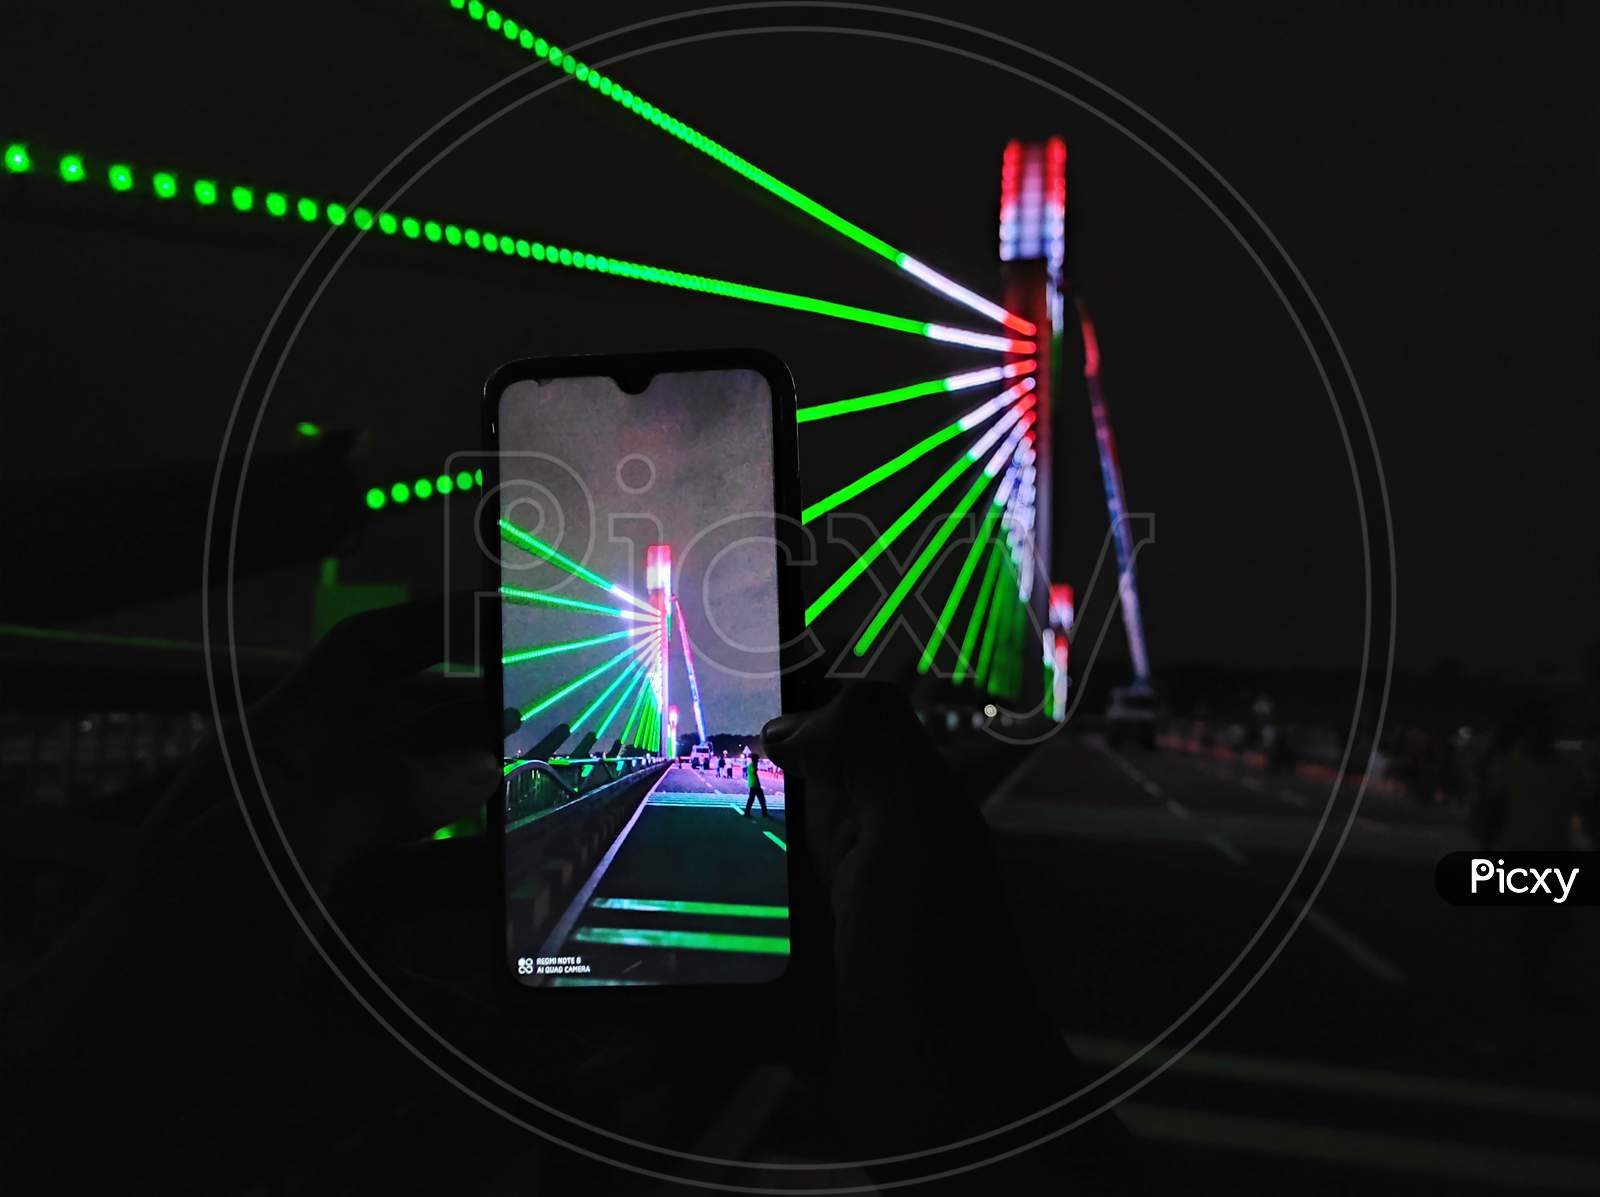 Durgam Cheruvu Cable Bridge capturing image with mobile